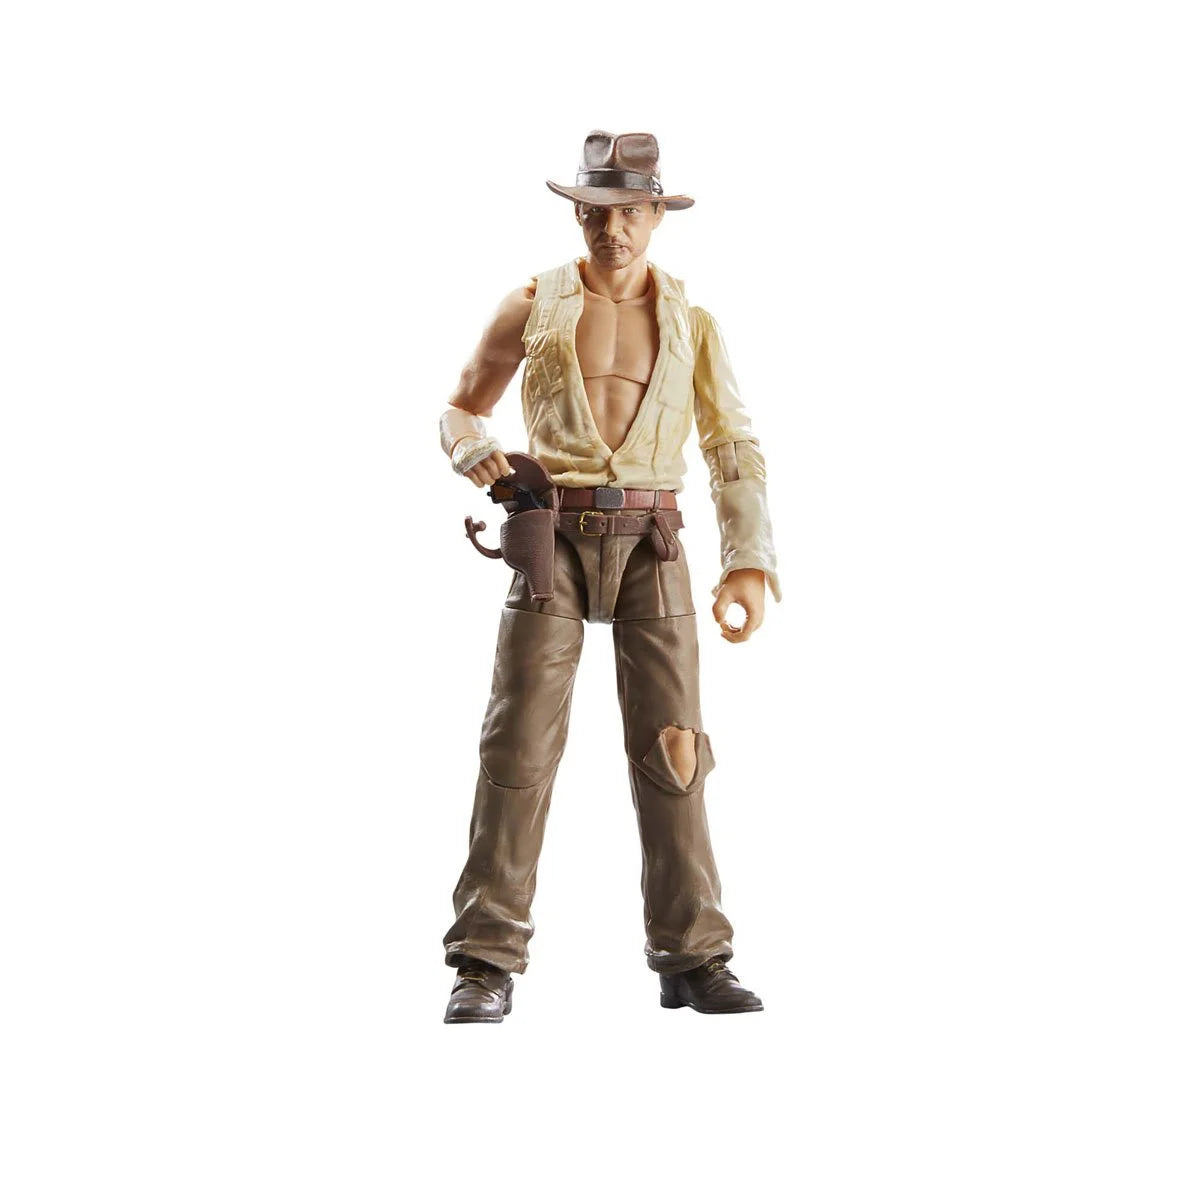 Indiana Jones Adventure Series Indiana Jones (Temple of Doom) 6-Inch Action Figure Toy - Heretoserveyou